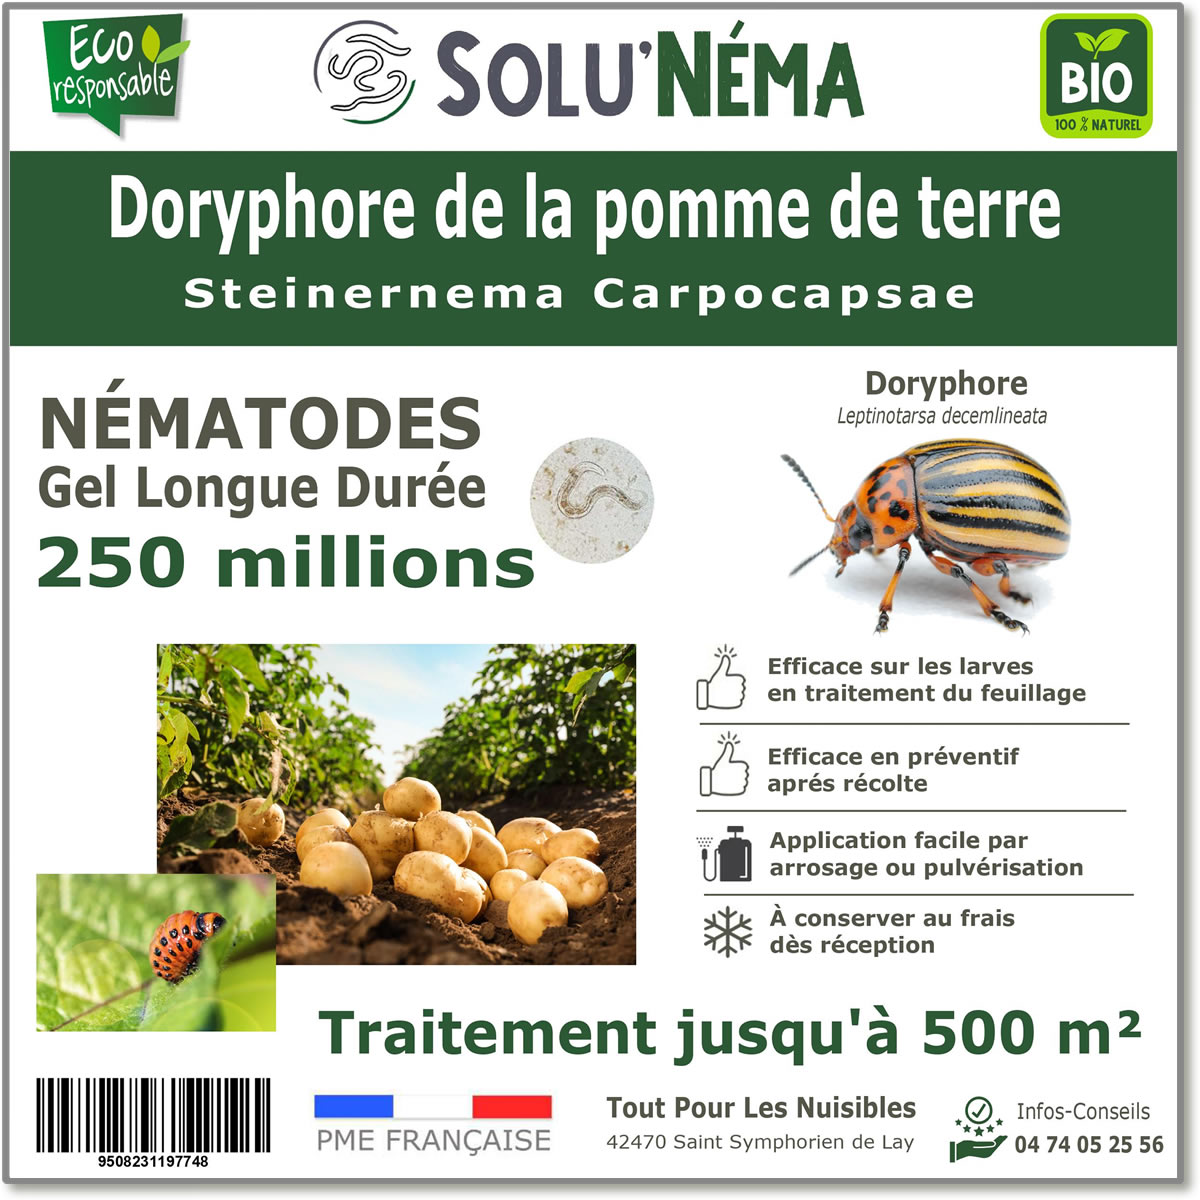 250 millions de nématodes pour traiter les larves de doryphore de la pomme de terre